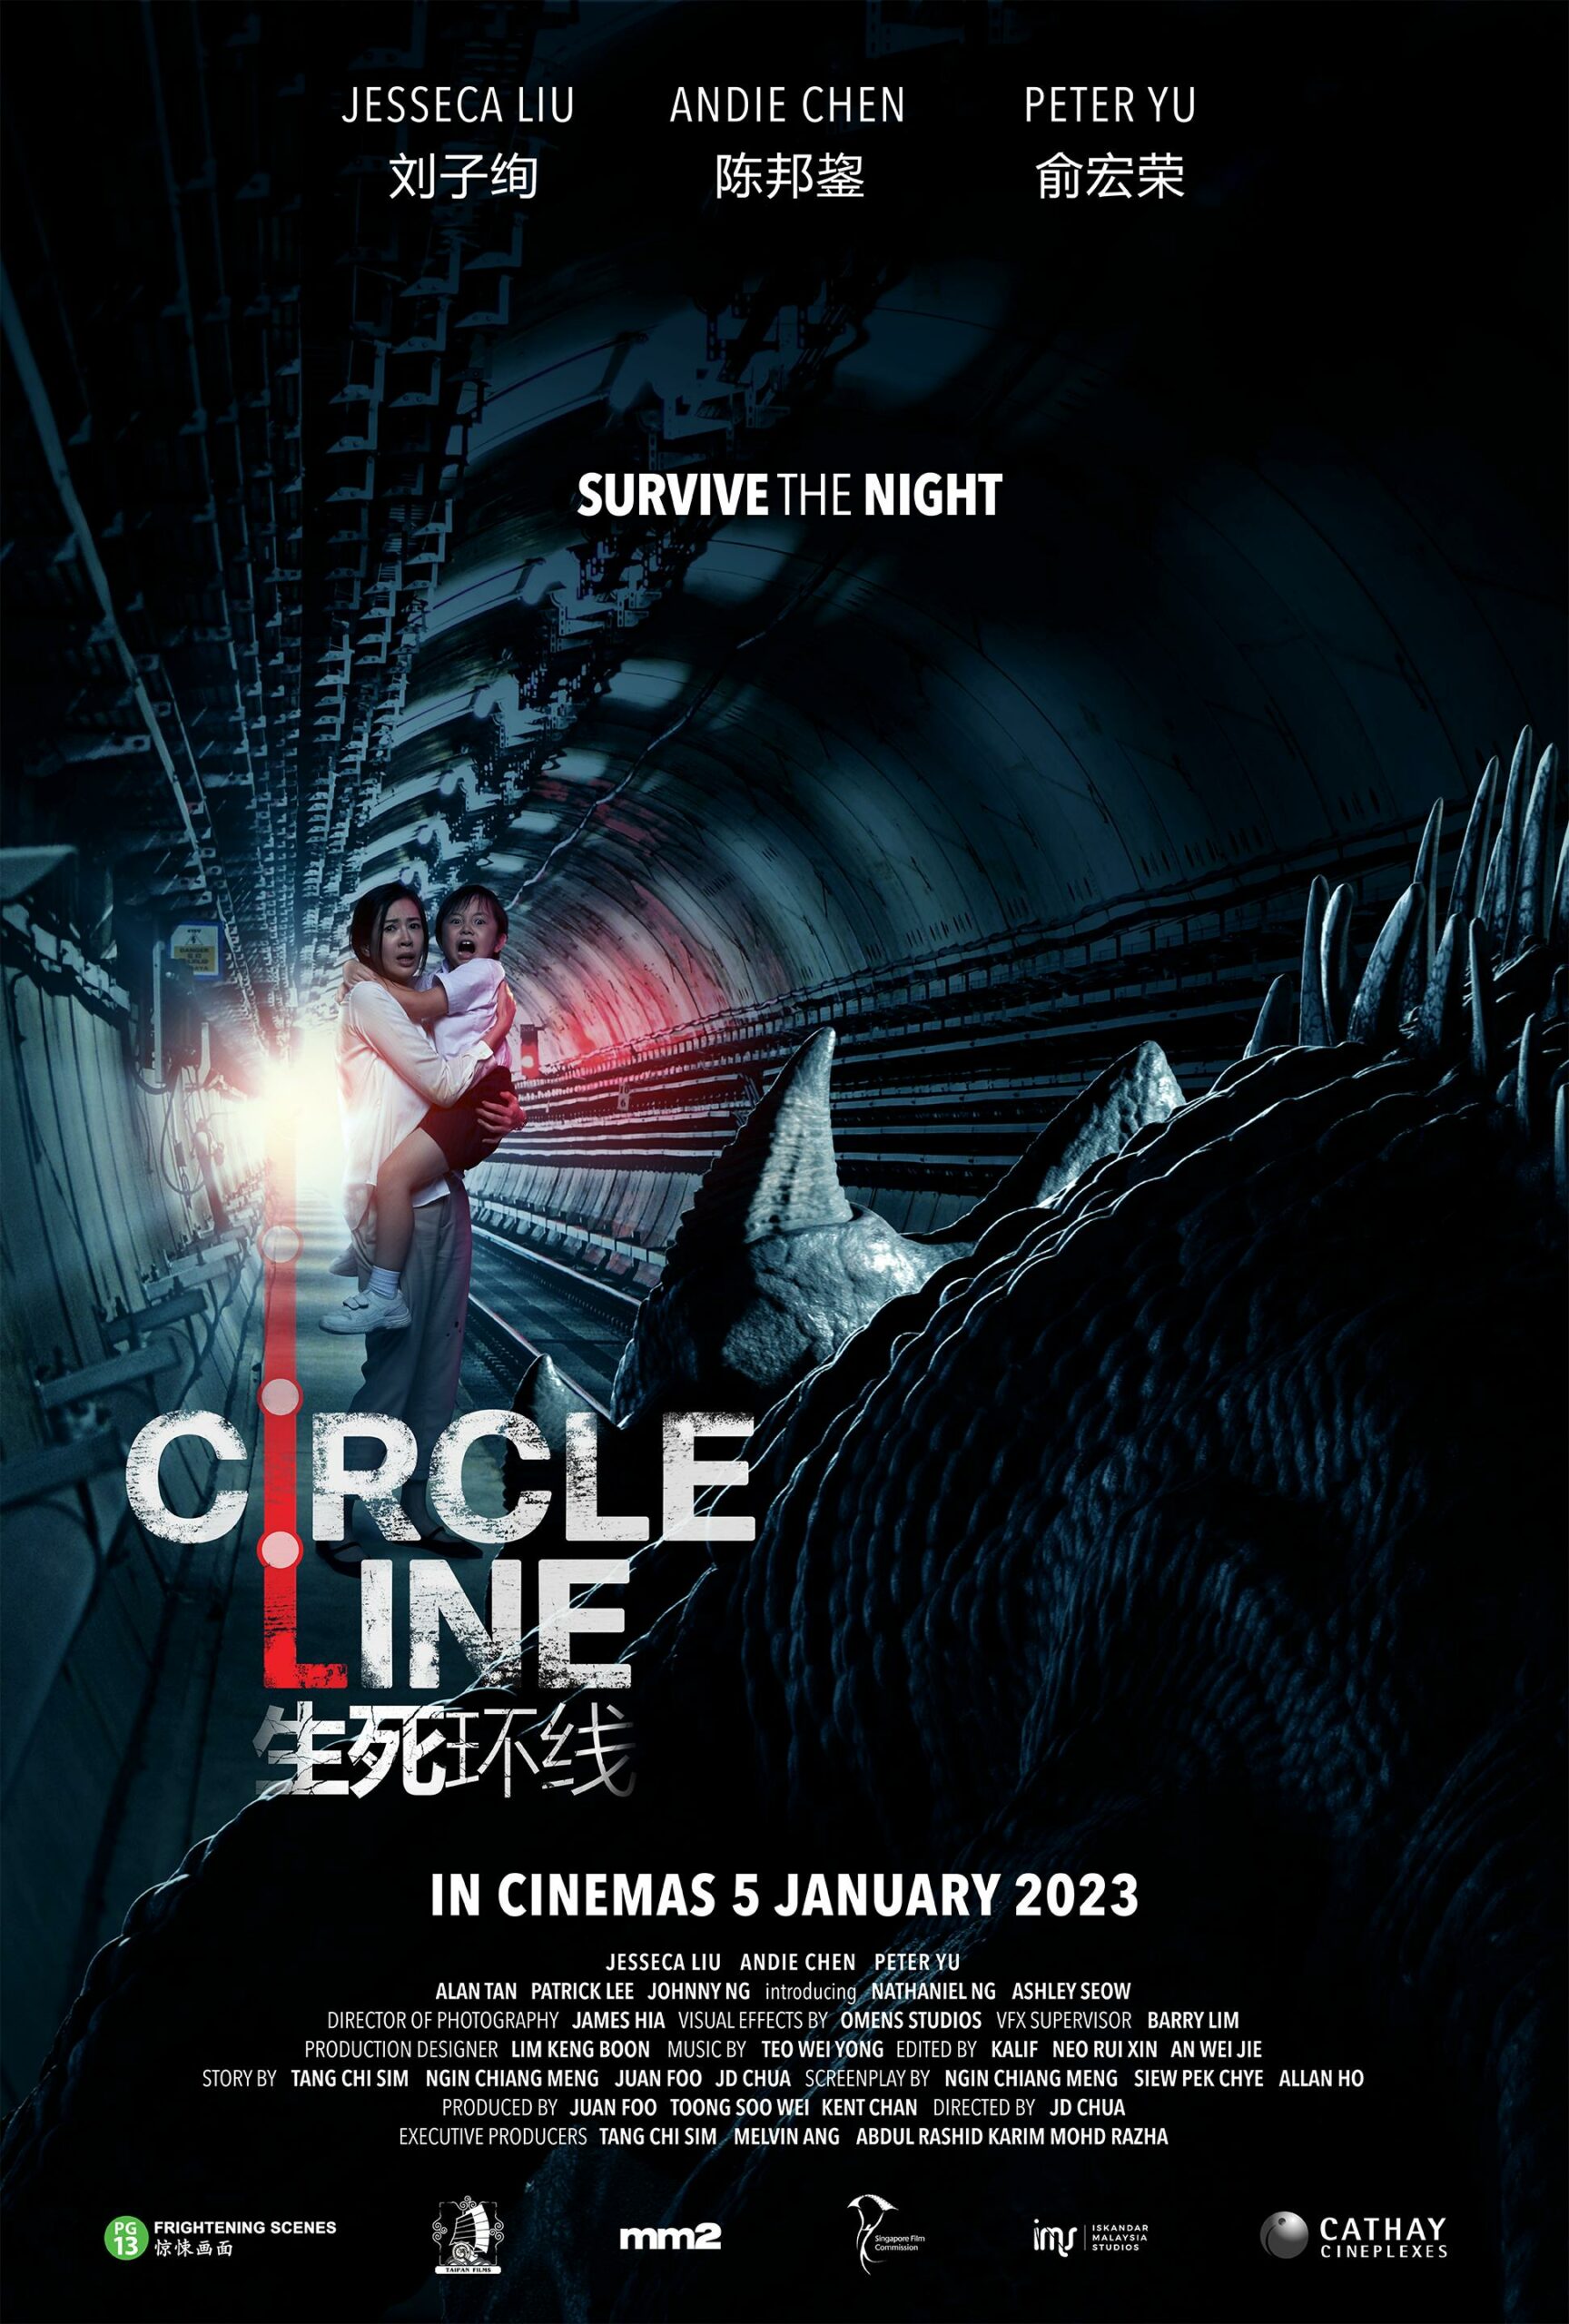 ดูหนังออนไลน์ฟรี ดูหนังออนไลน์ฟรี CIRCLE LINE 2023 moviehdfree